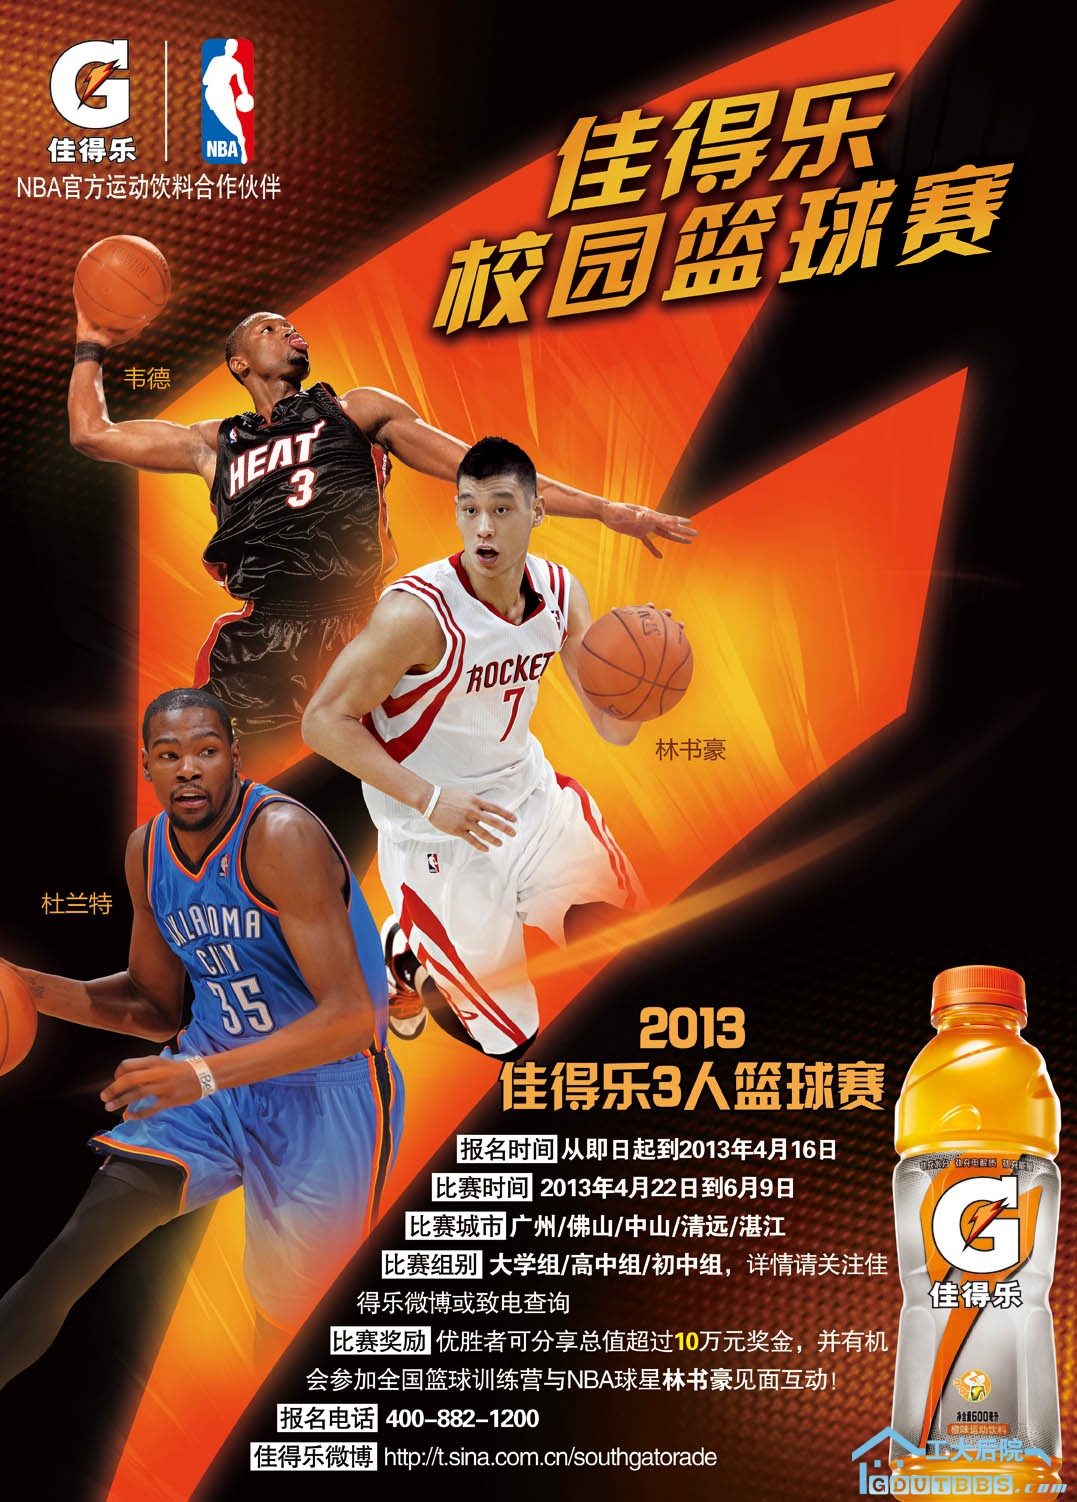 2013佳得乐校园篮球赛海报 380x530-130314.jpg